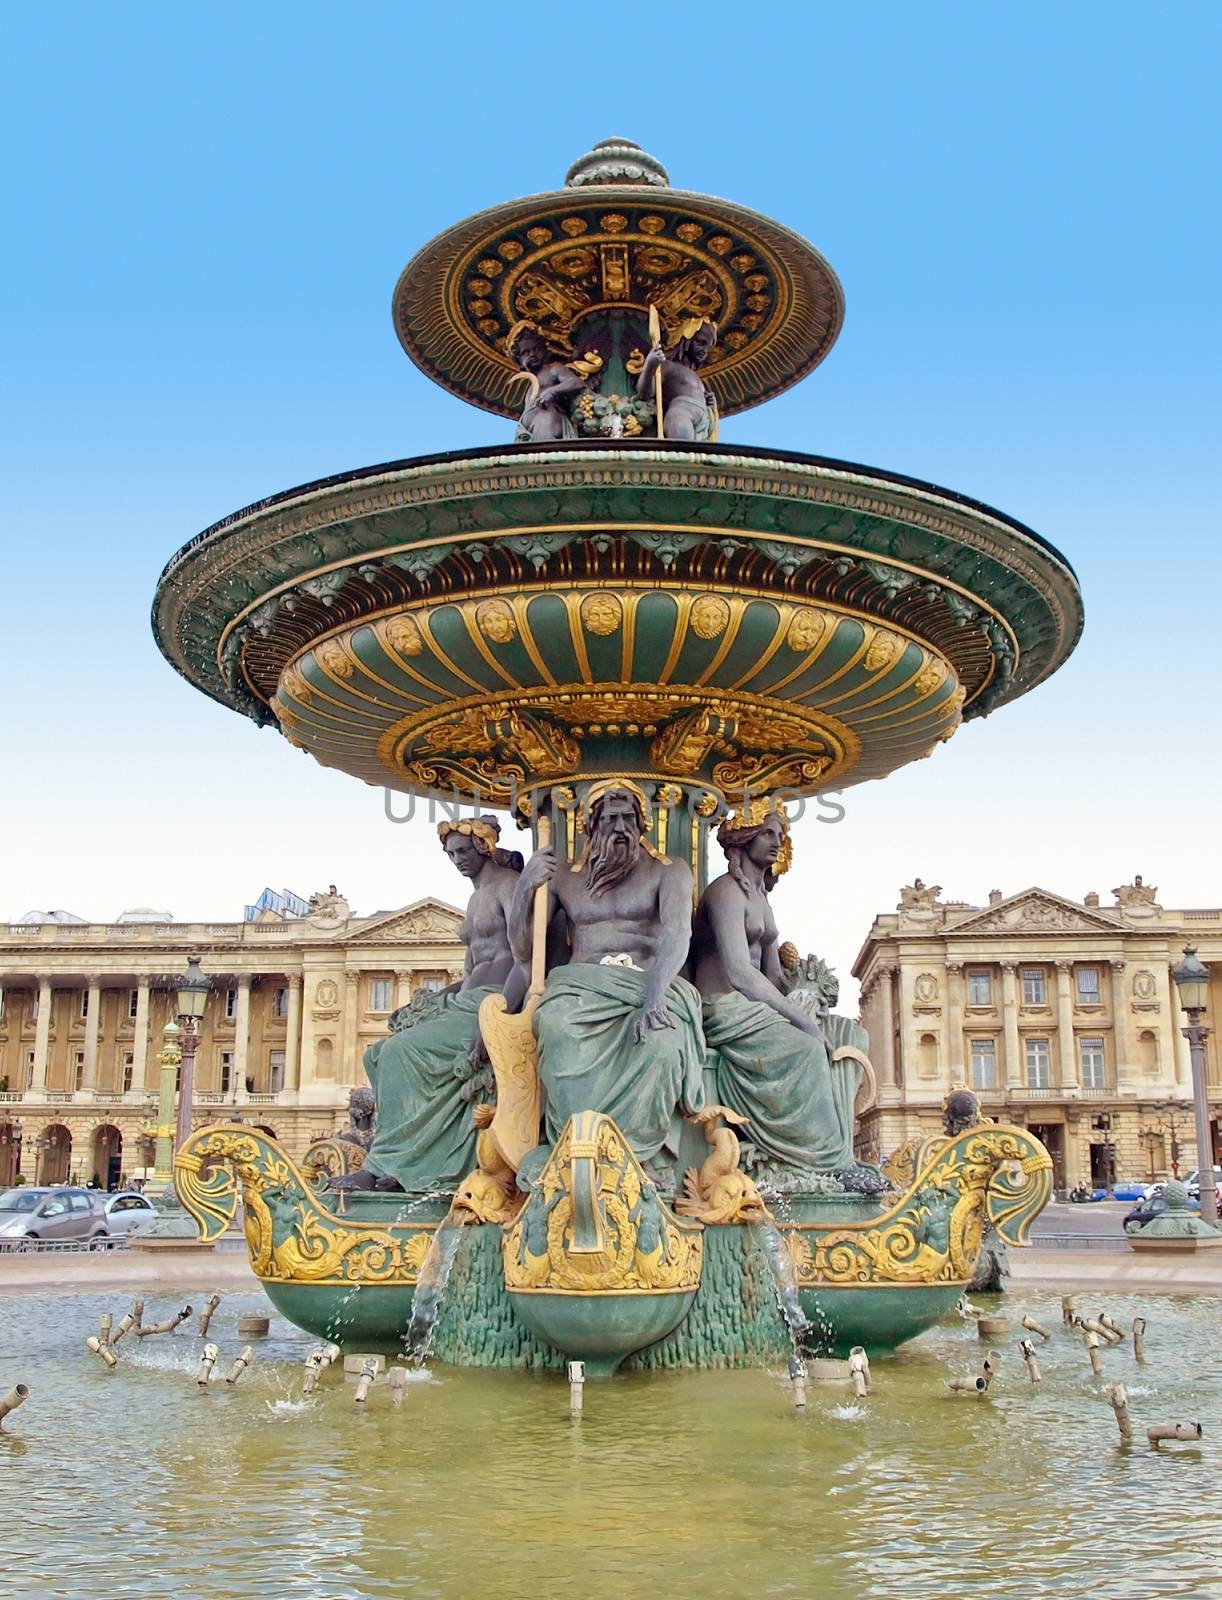 Beautiful La Fontaine des Fleuves (1835) fountain at the popular Place de la Concorde, Paris.